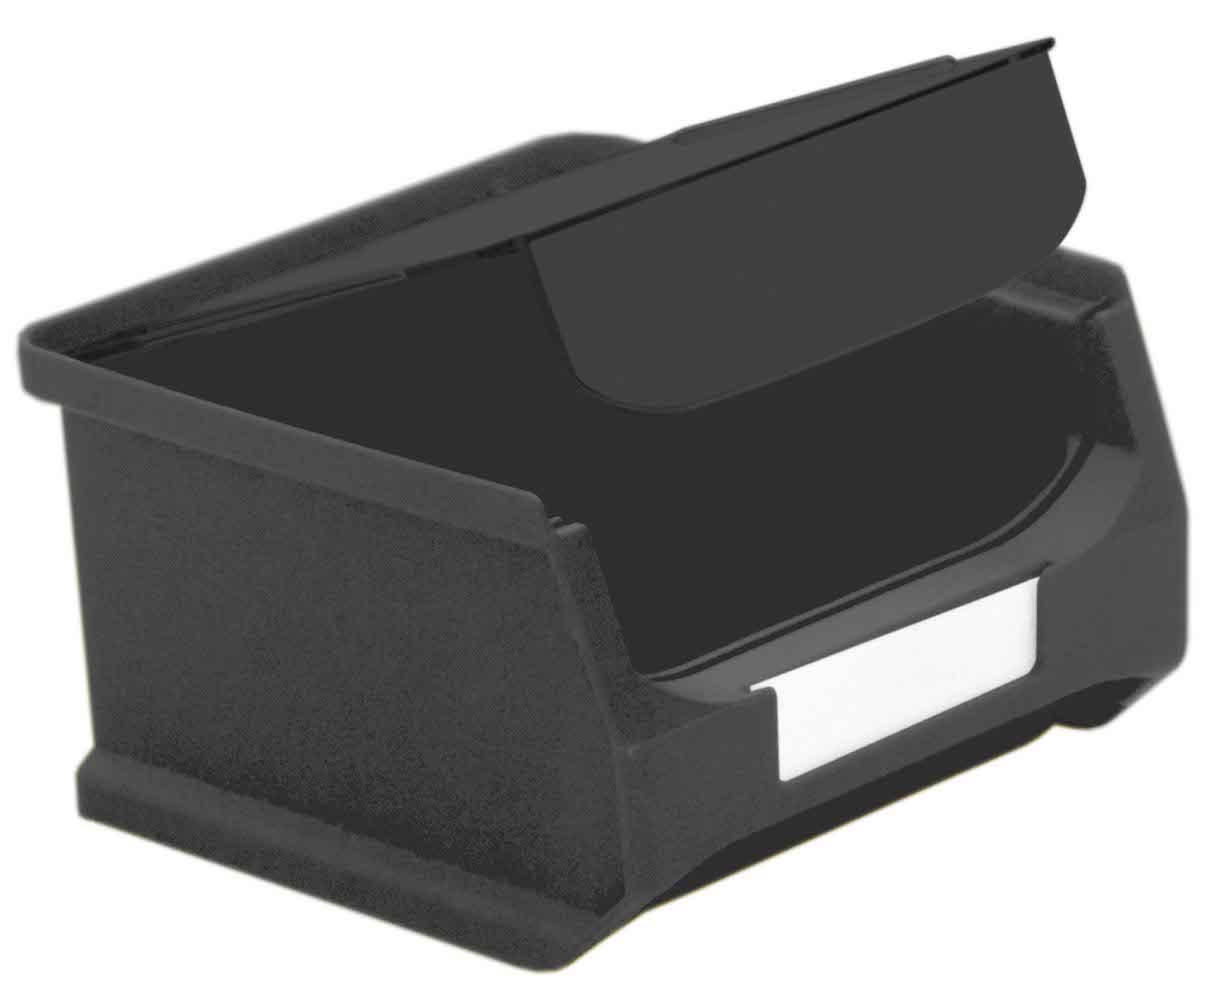 Staubdeckel 10x leitfähige Abdeckung für Sichtlagerbox 1.0 | HxBxT 0,2x9,5x8,5cm | ESD, Schmutzdeckel, Schutzdeckel, Sichtlagerbehälter, Sitchlagerkasten